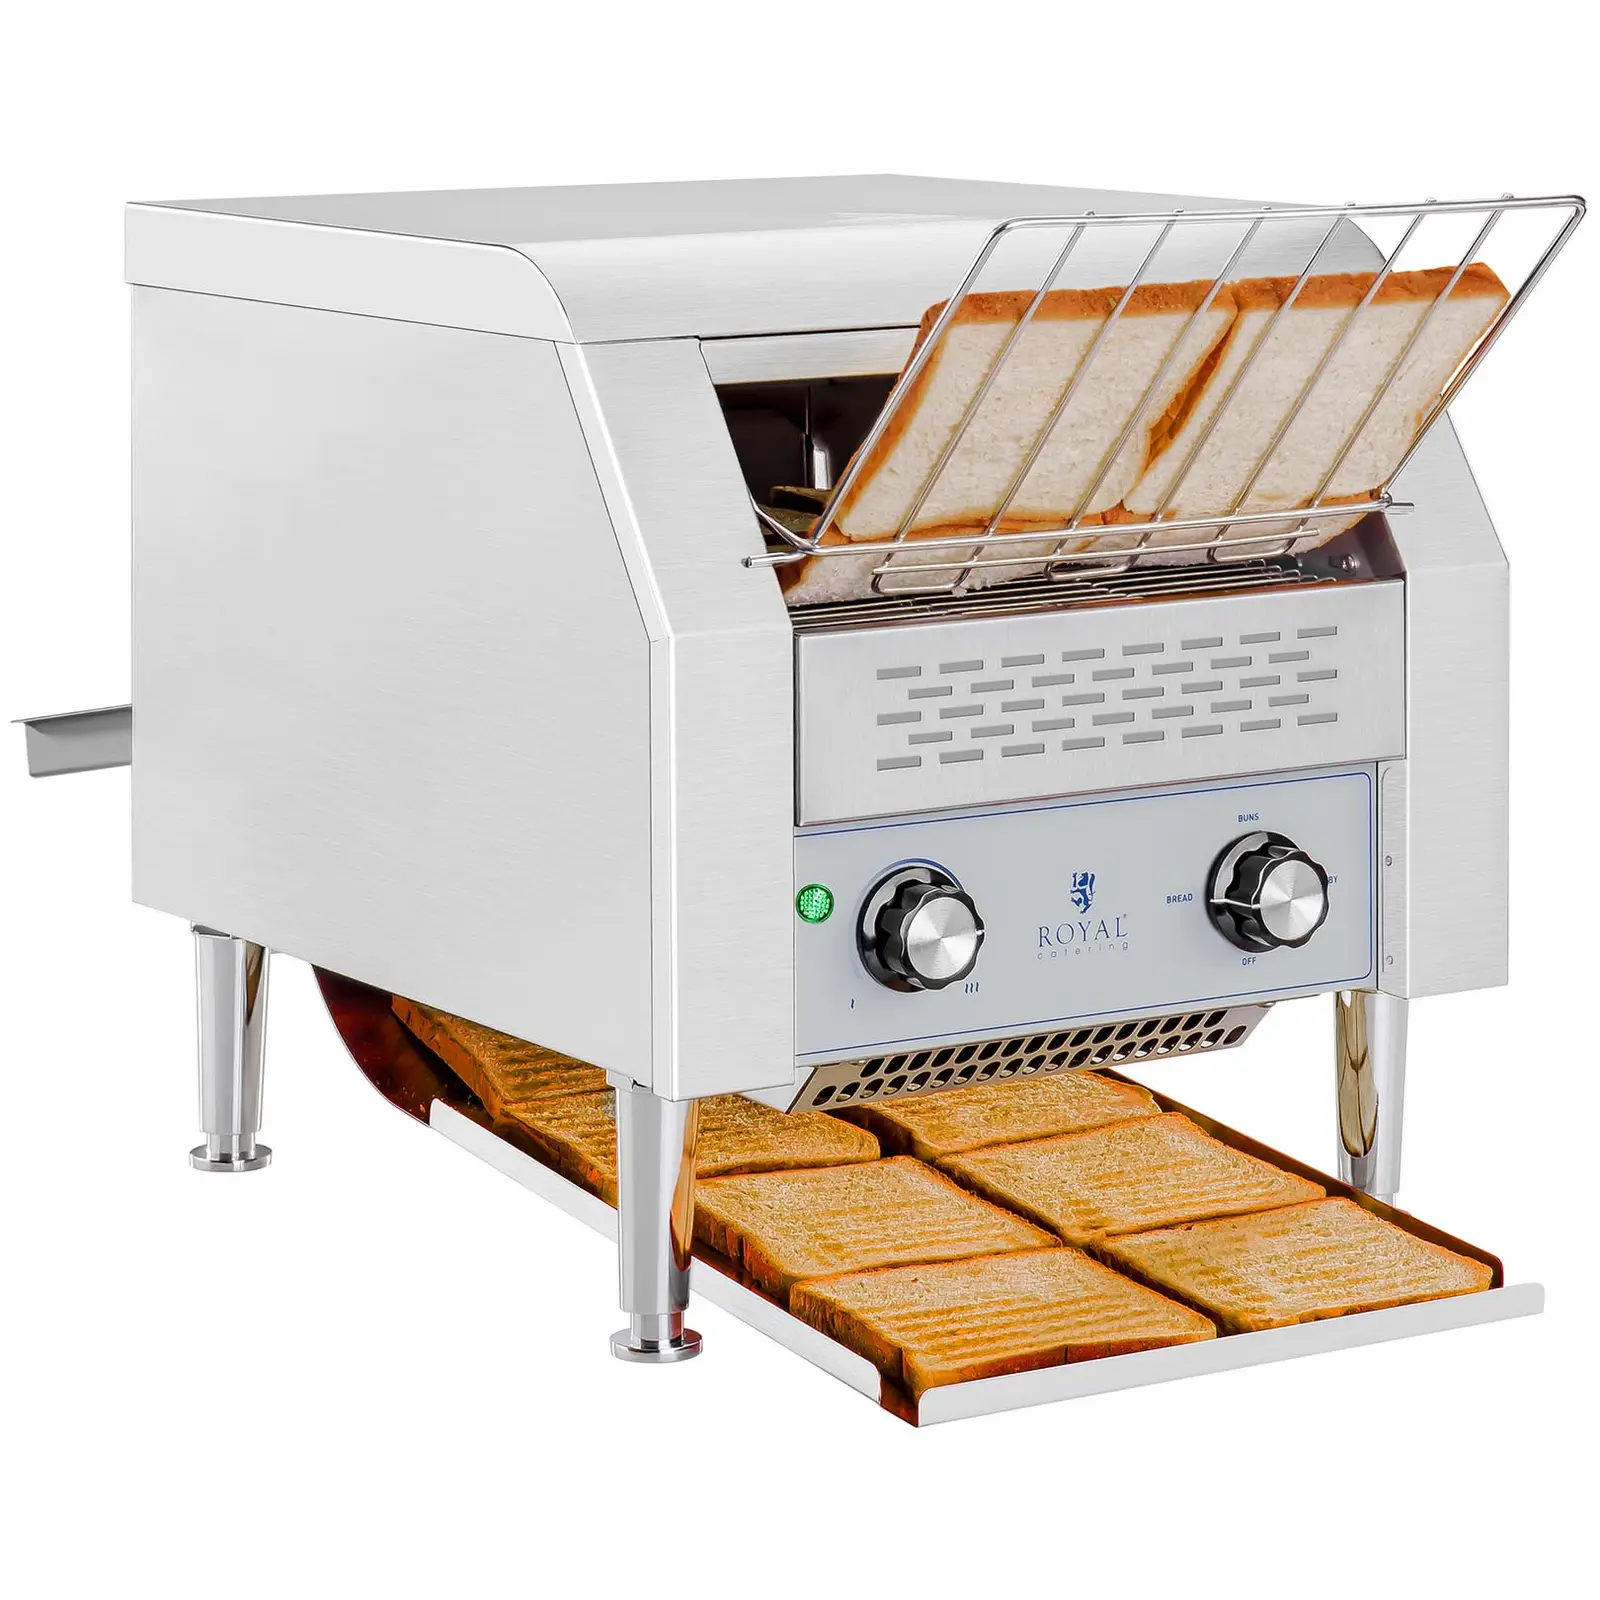 Priechodný toaster - 2.200 wattov - 7 úrovní - 3 režimy